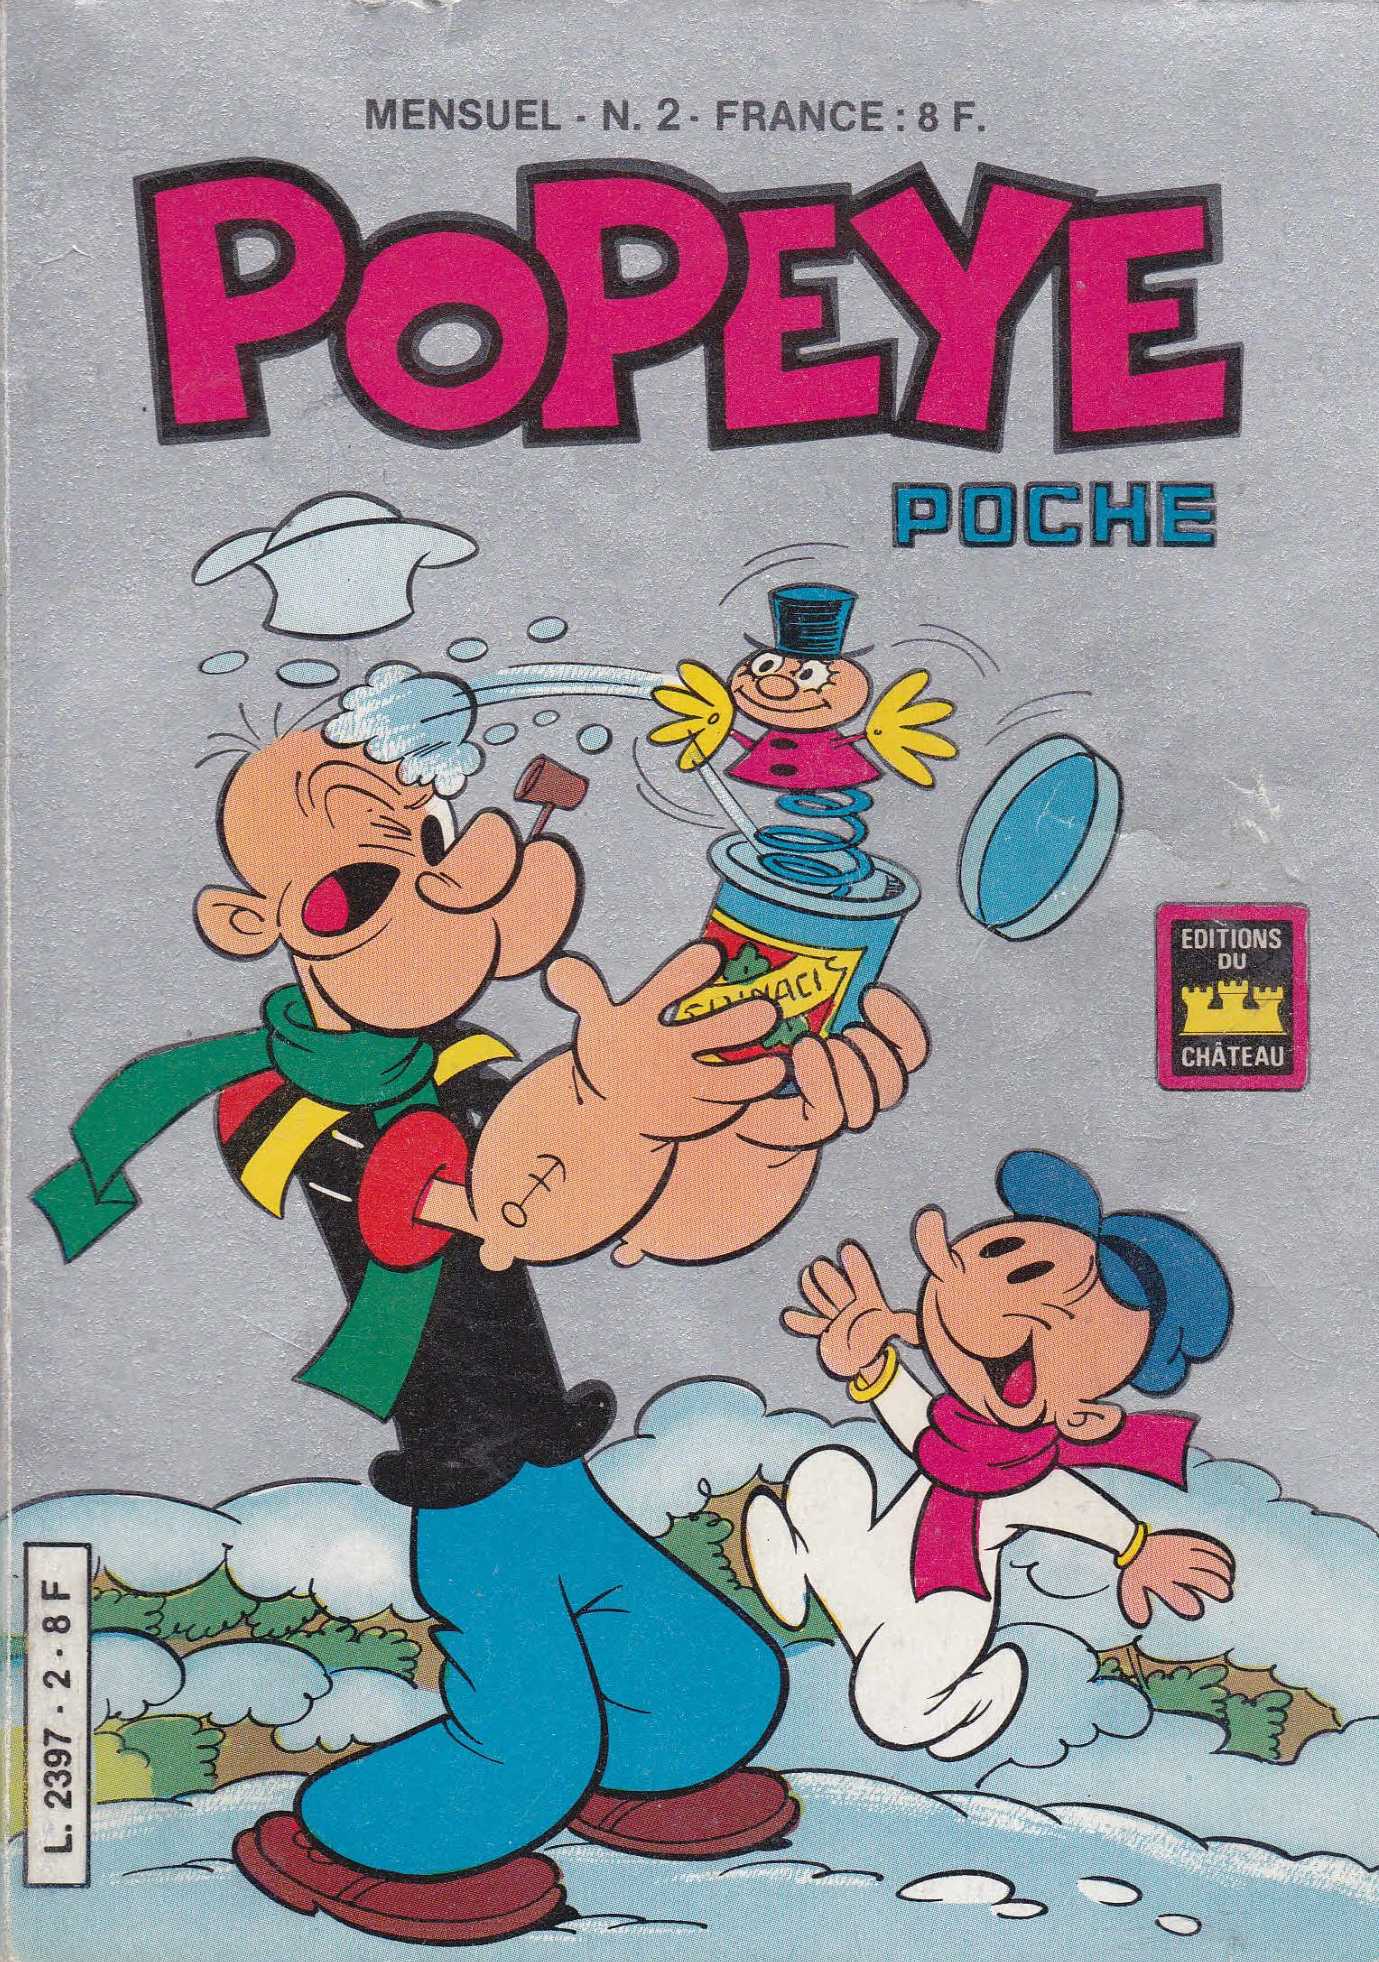 Une Couverture de la Série Popeye Poche